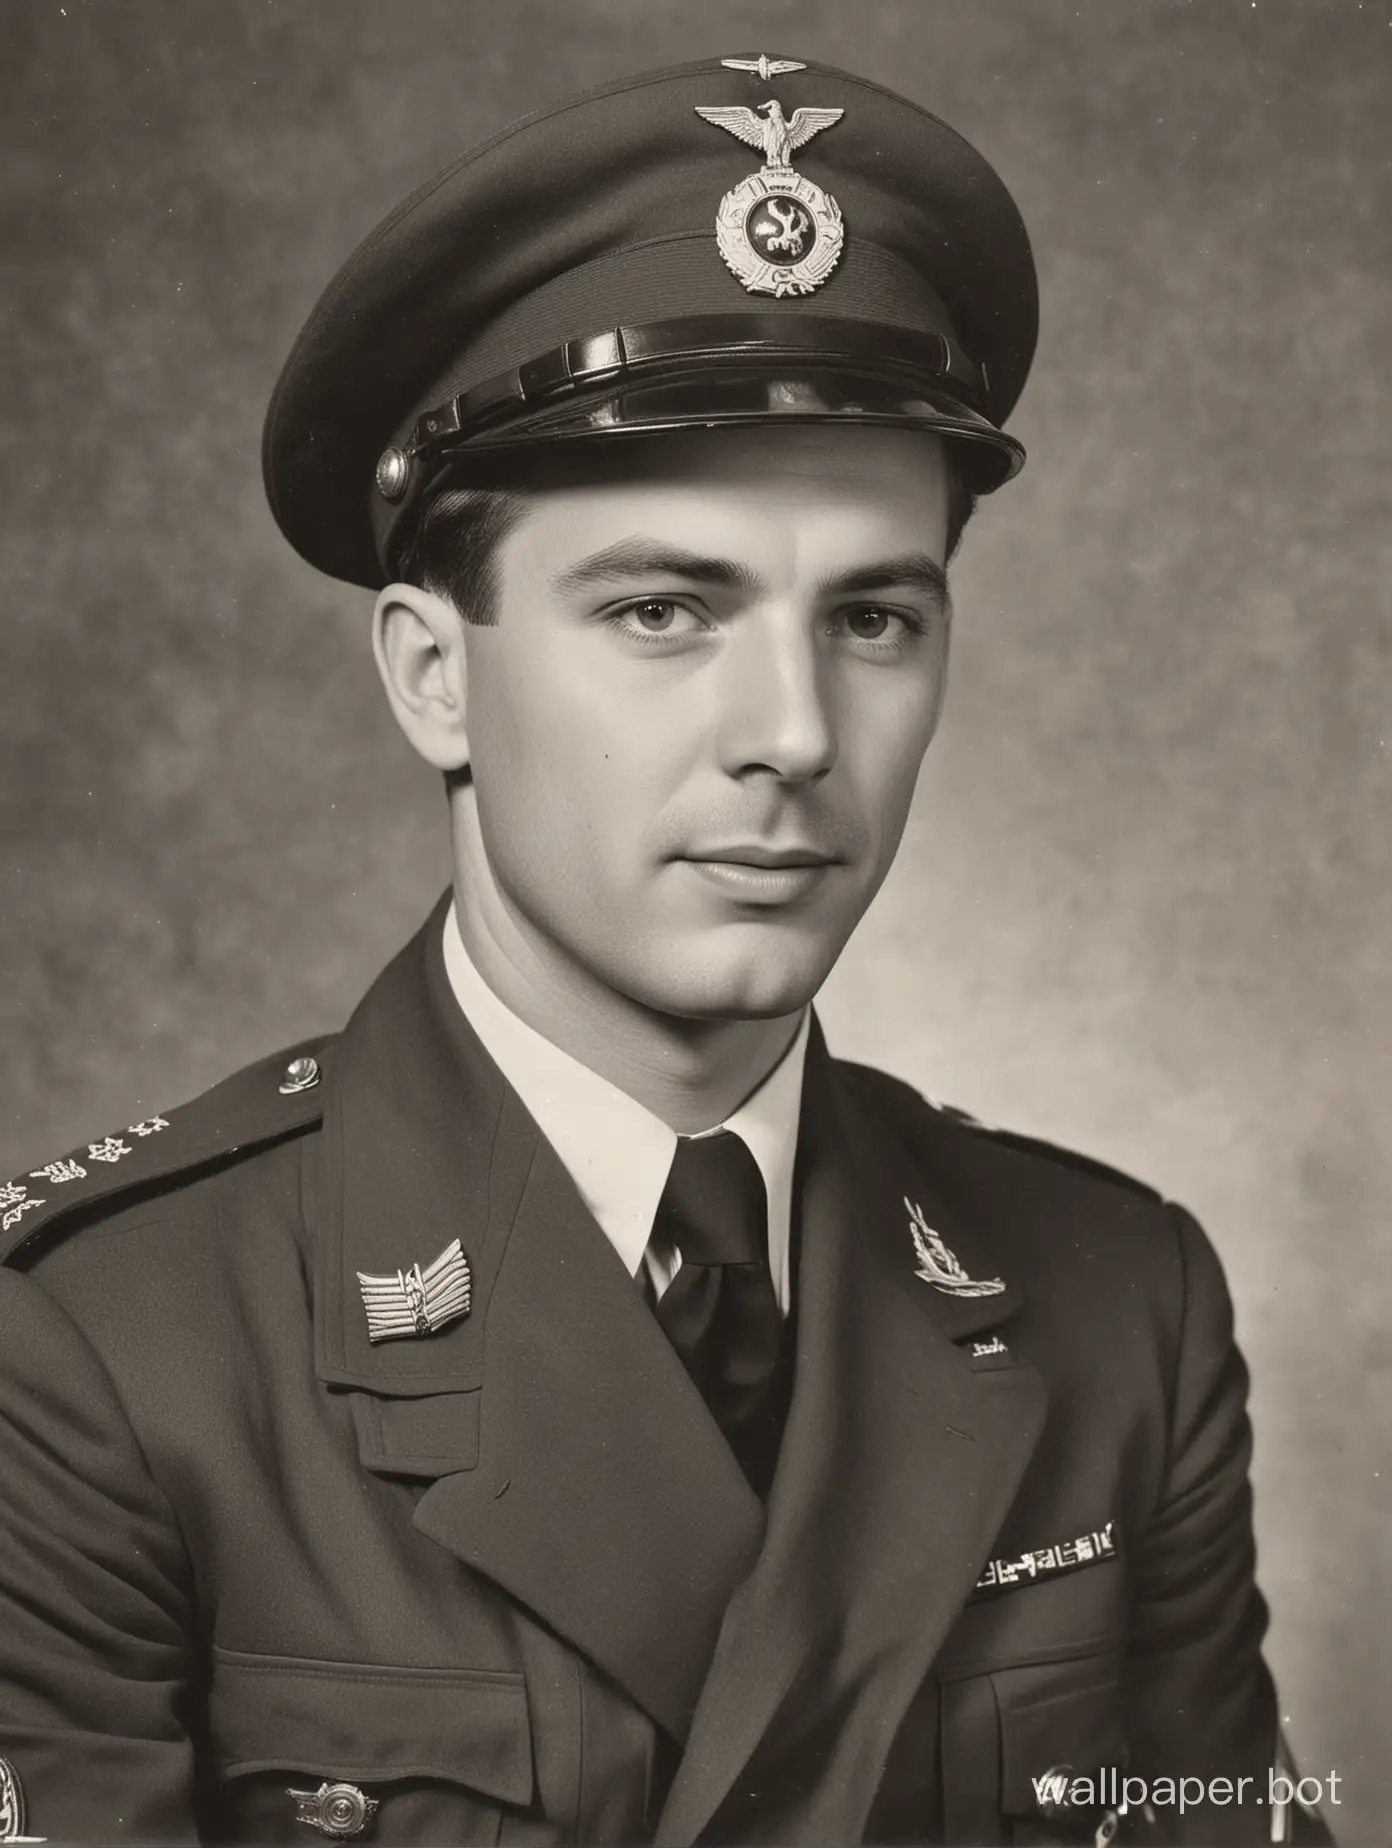 Captain Michael Airbone Divsion 1940s